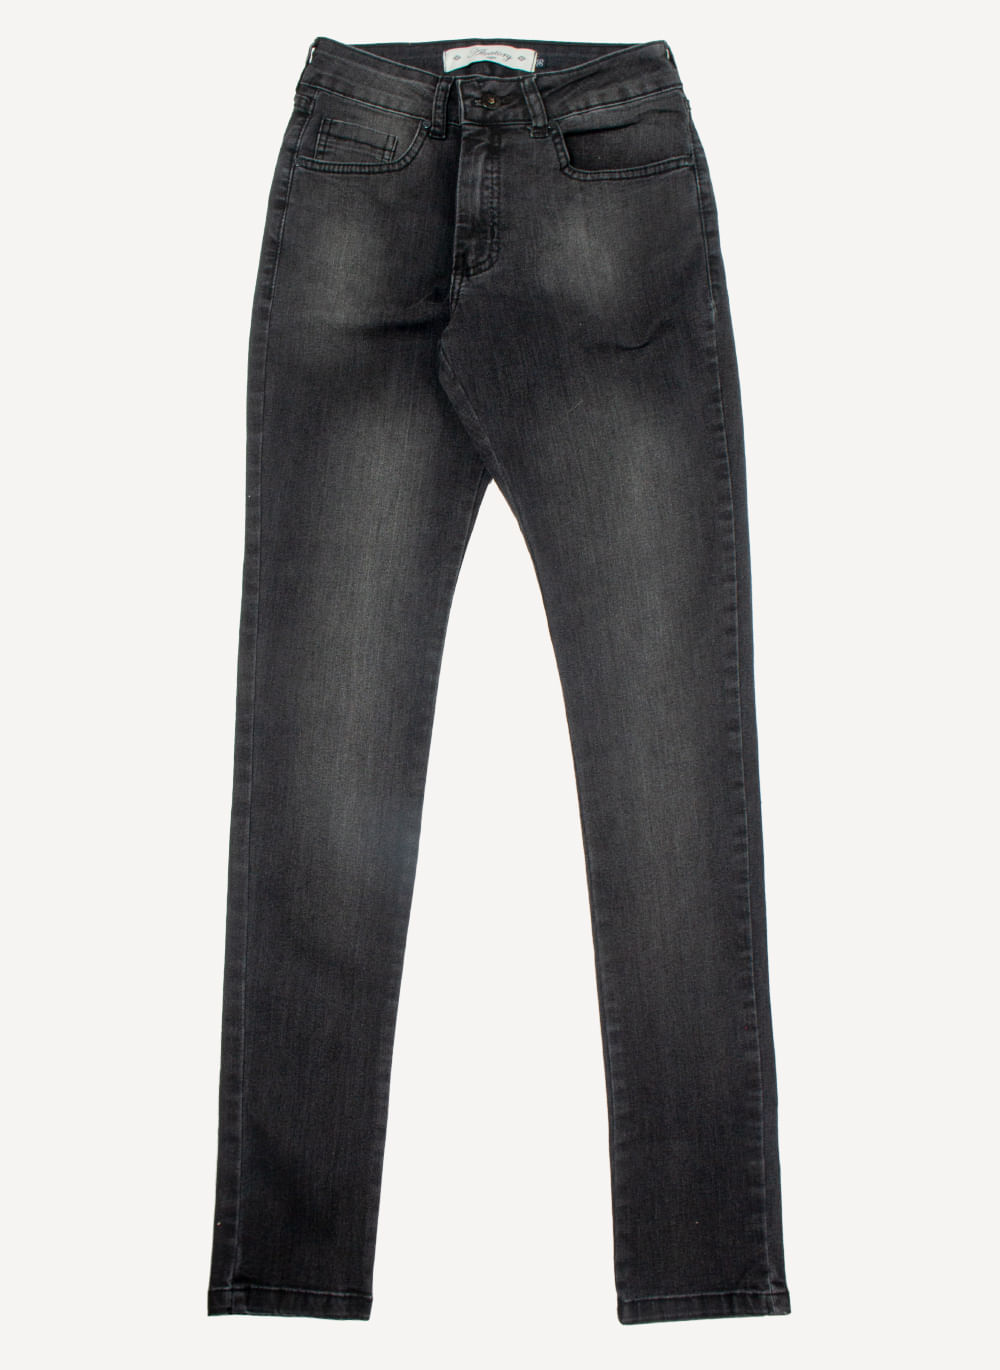 calca-jeans-feminina-aleatory-all-black-still-1-